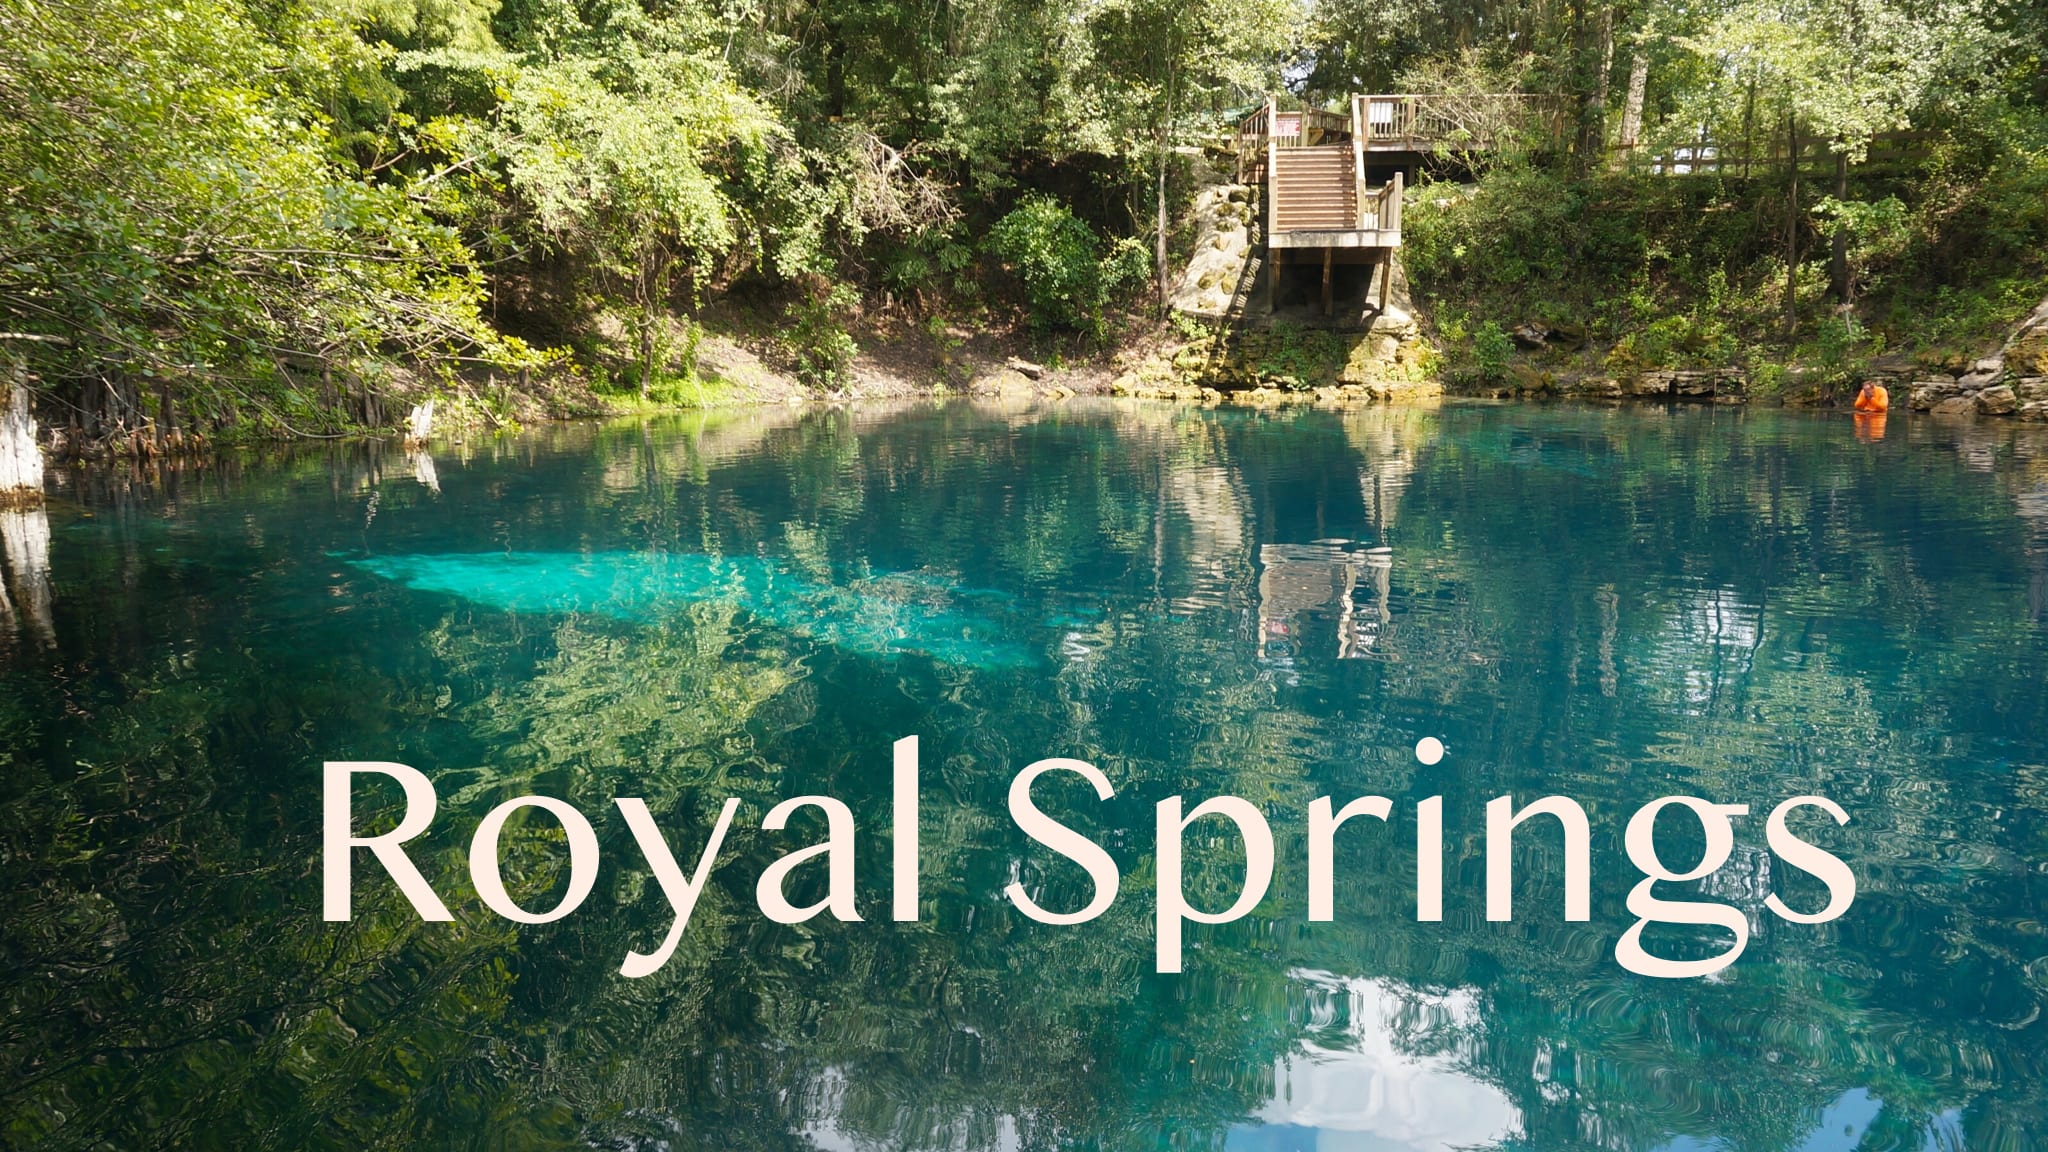 Royal Springs – Florida Hikes